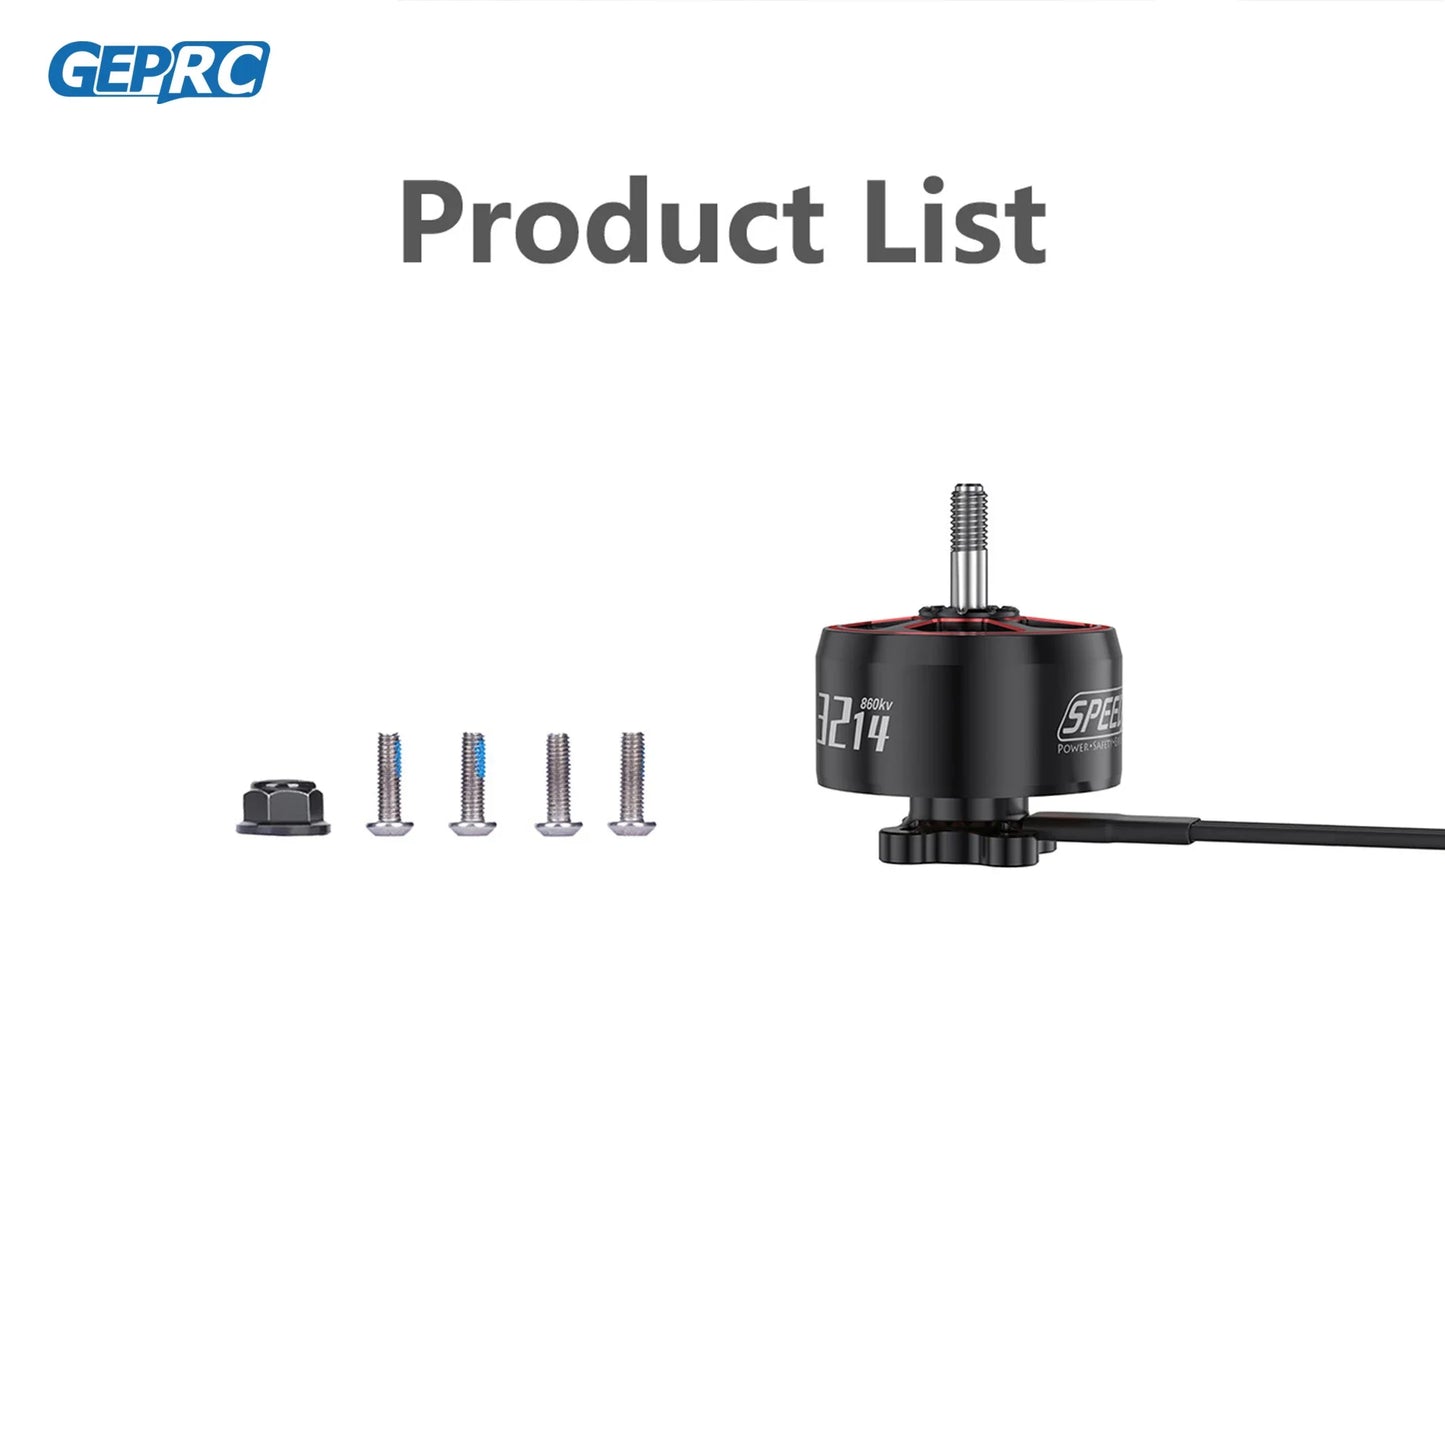 GEPRC Product List 860kv IEiy GPLl Llll